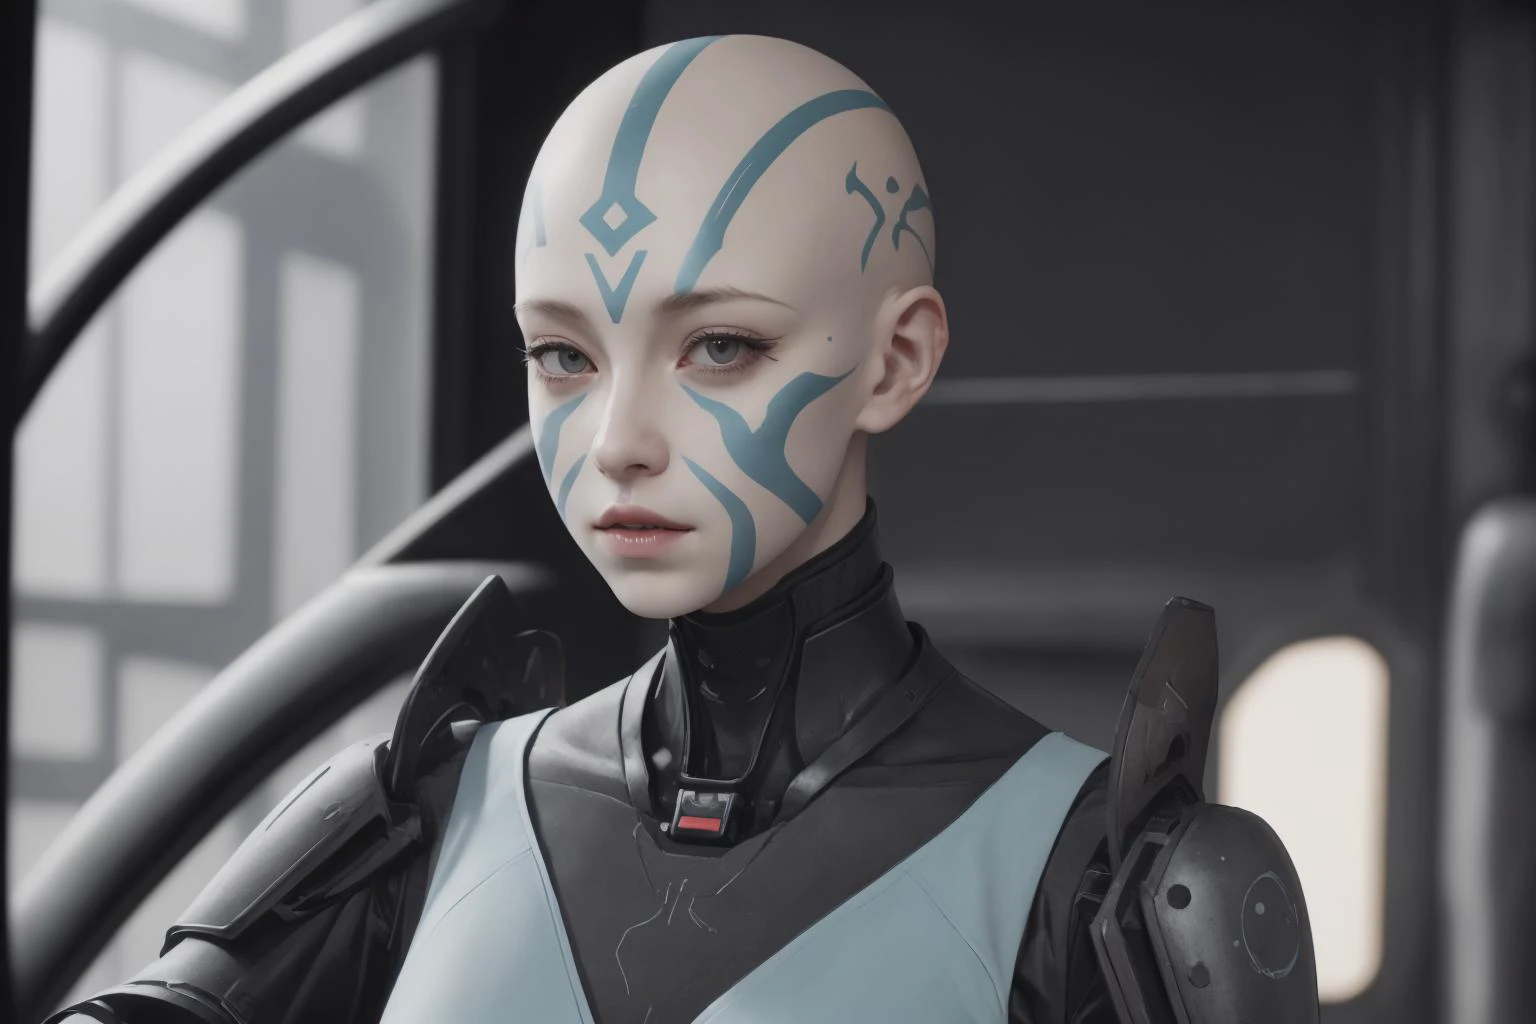 1個女孩,   淡藍色皮膚, 秃, 部落臉部標記, 科幻機甲飛行員